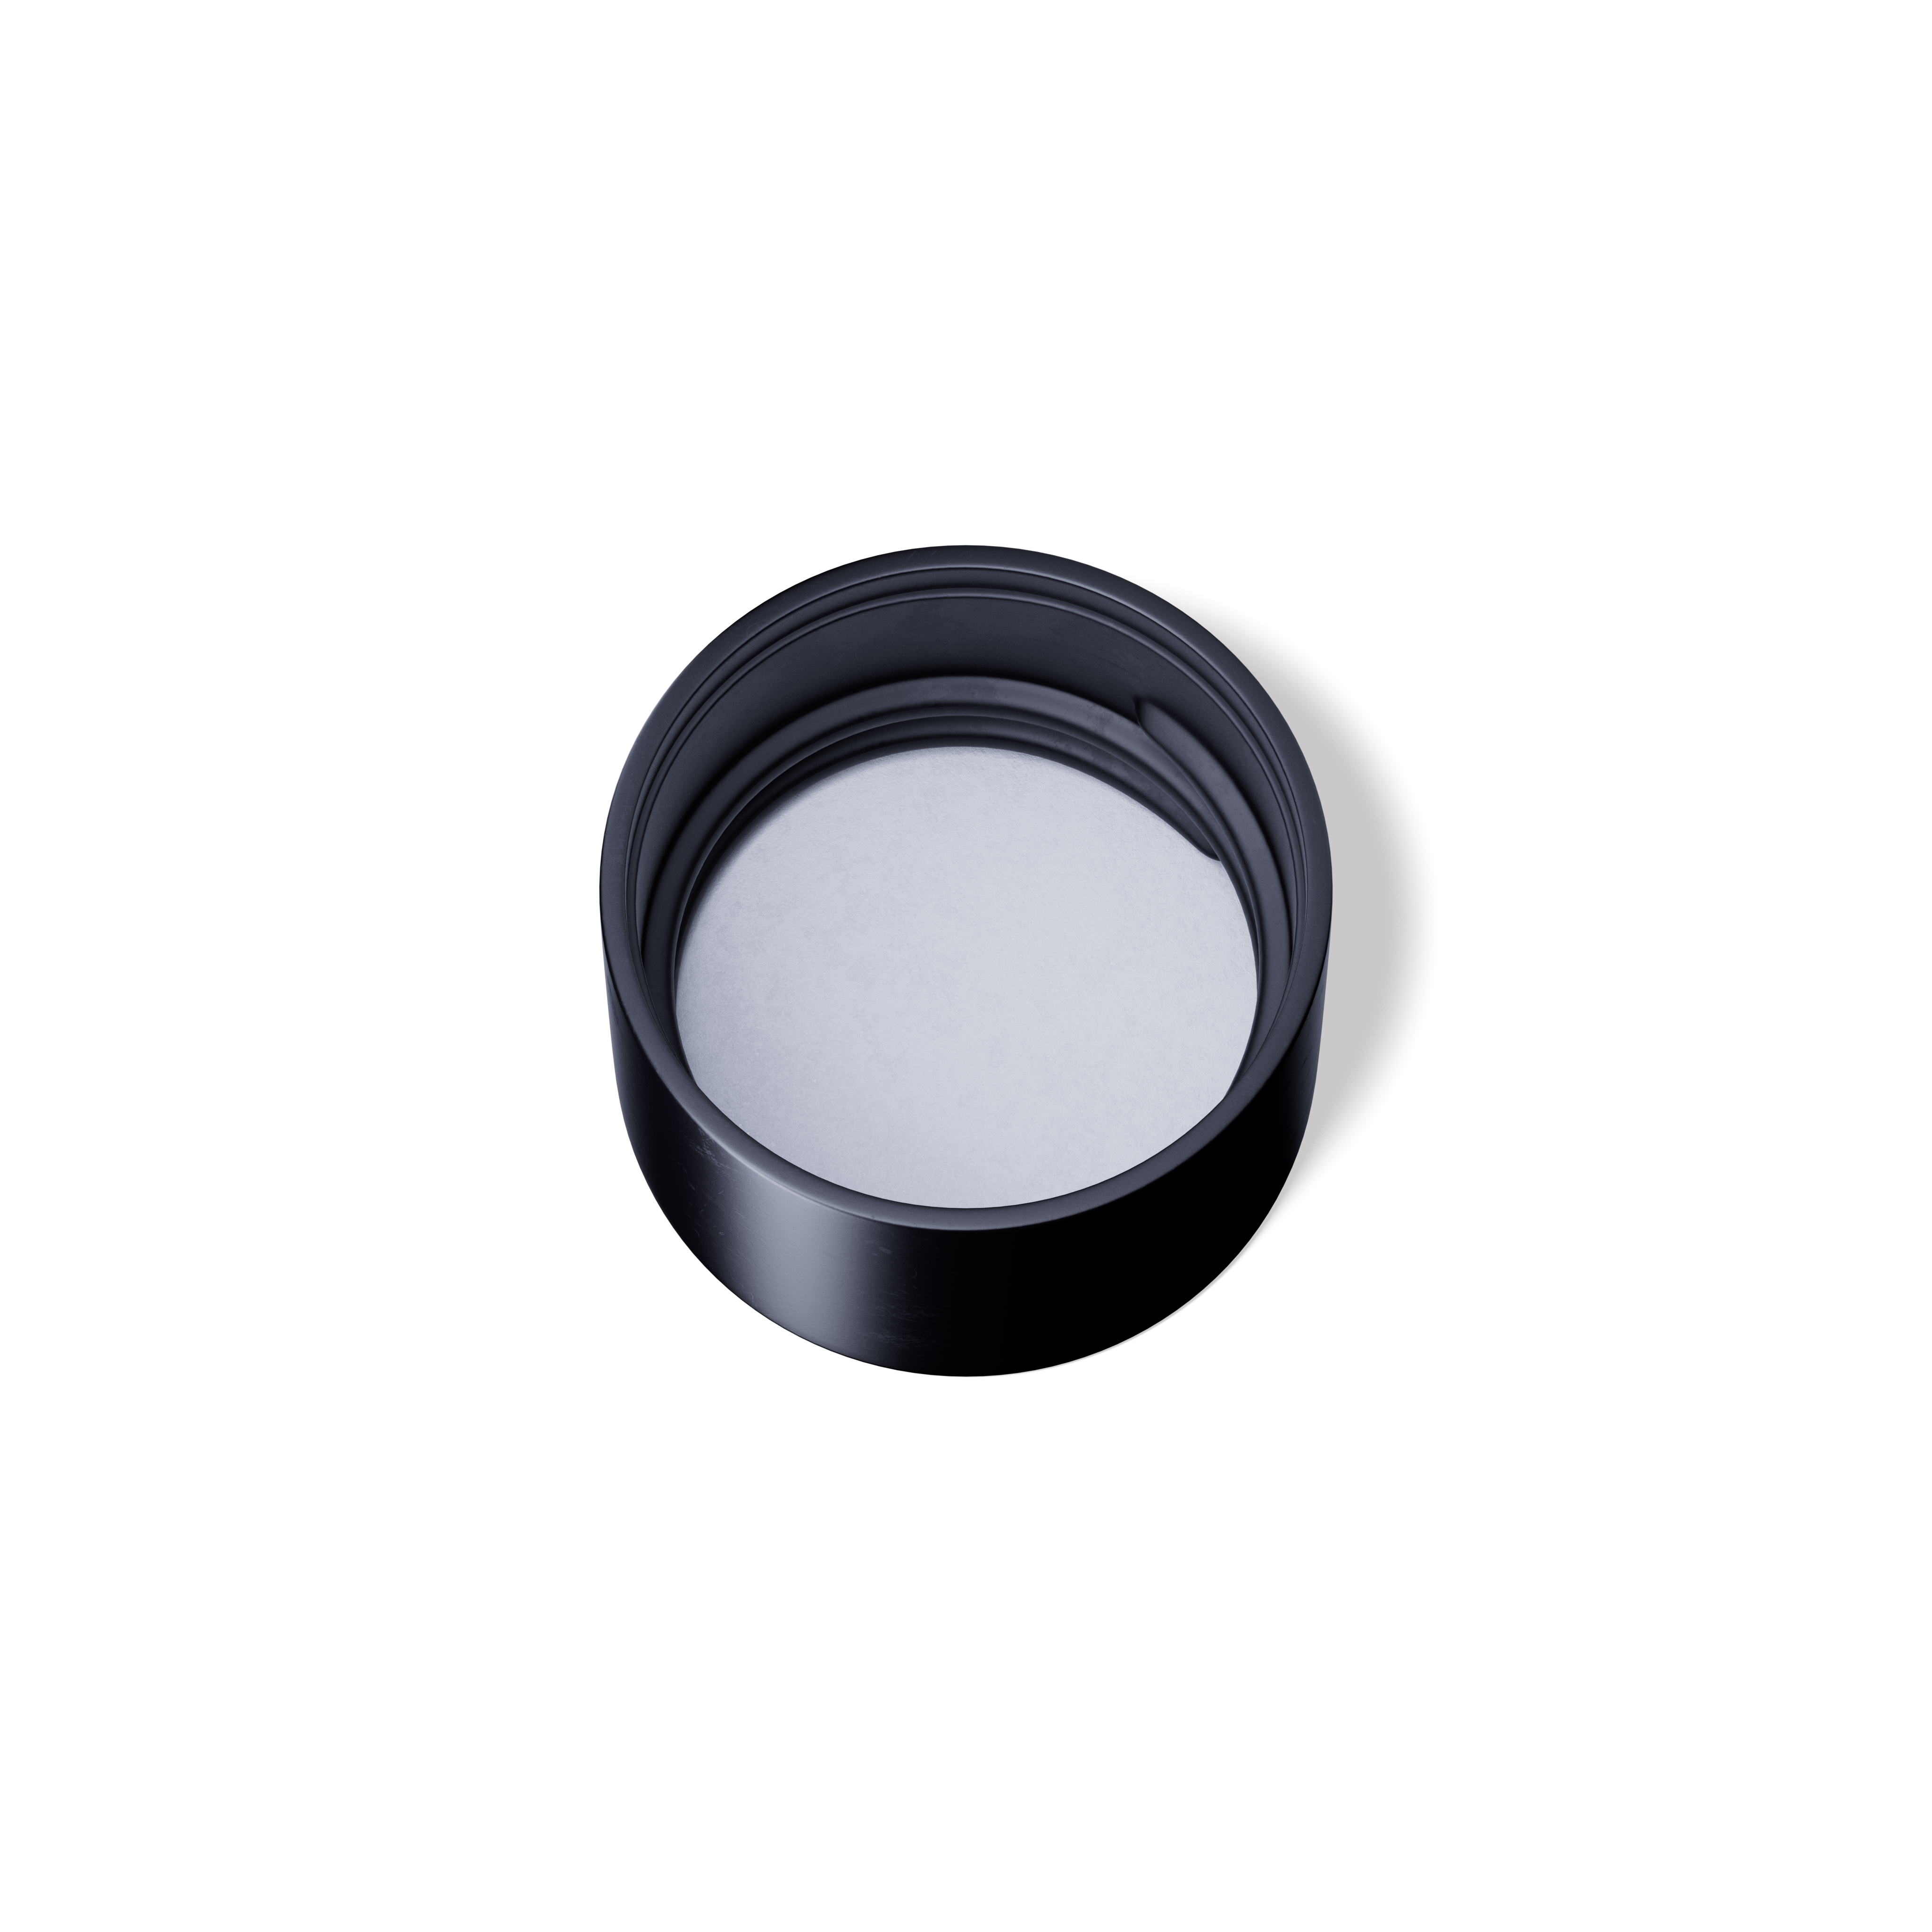 Screw cap Clio 285, 24/410, aluminium, black with white inlay